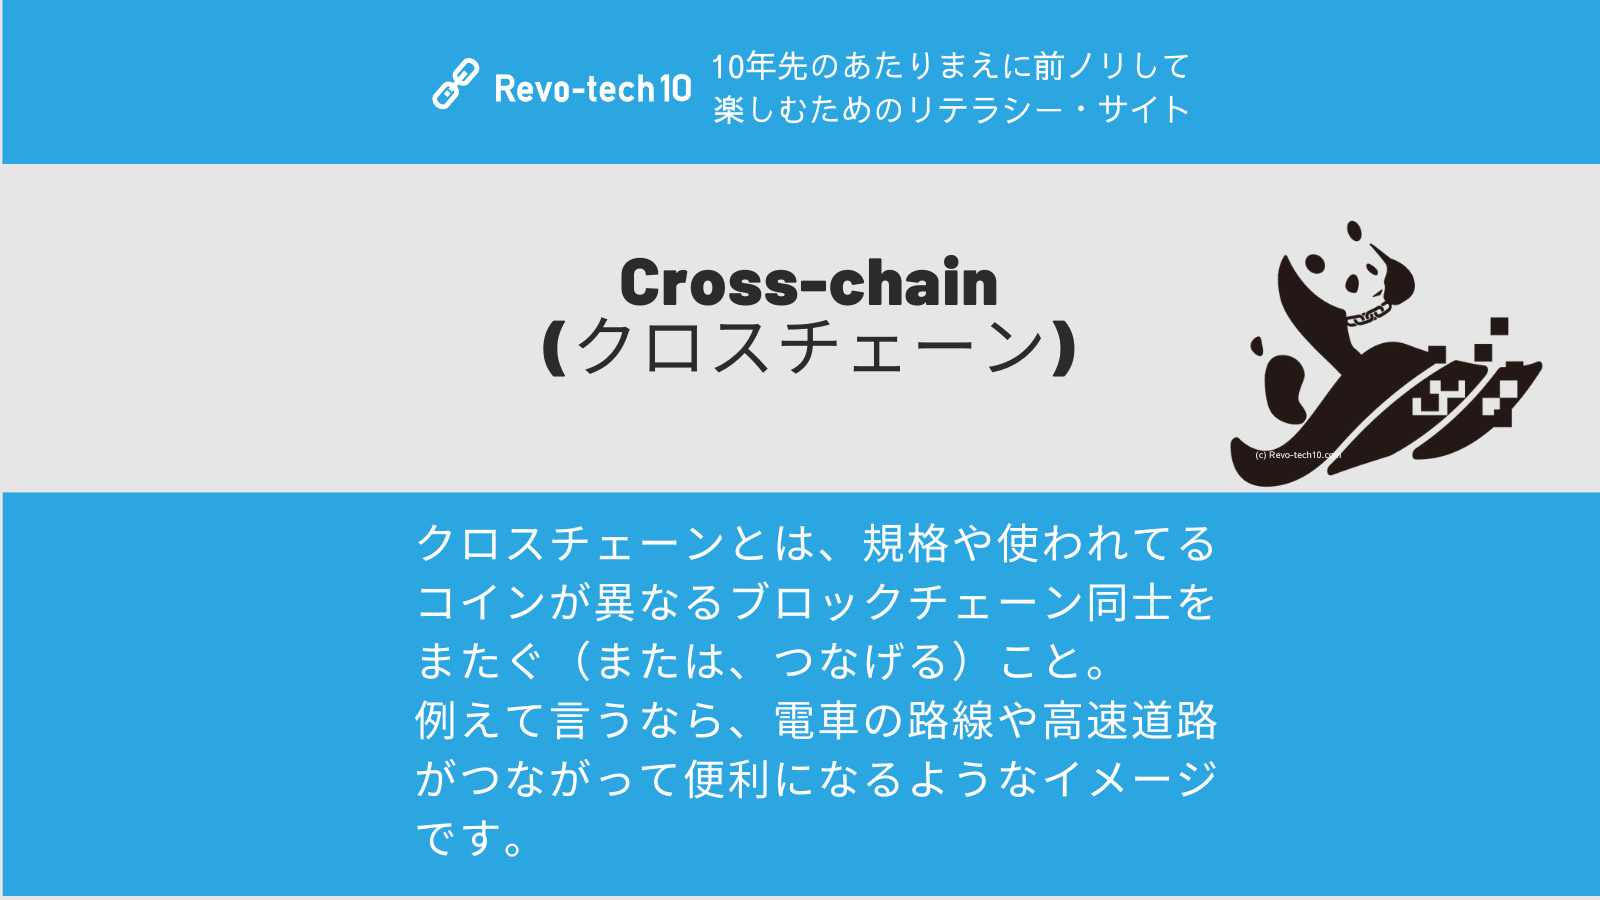 0066_Cross-chain(クロスチェーン)とは、規格や使われてるコインが異なるブロックチェーン同士をまたぐ（または、つなげる）こと。 例えて言うなら、電車の路線や高速道路がつながって便利になるようなイメージ。